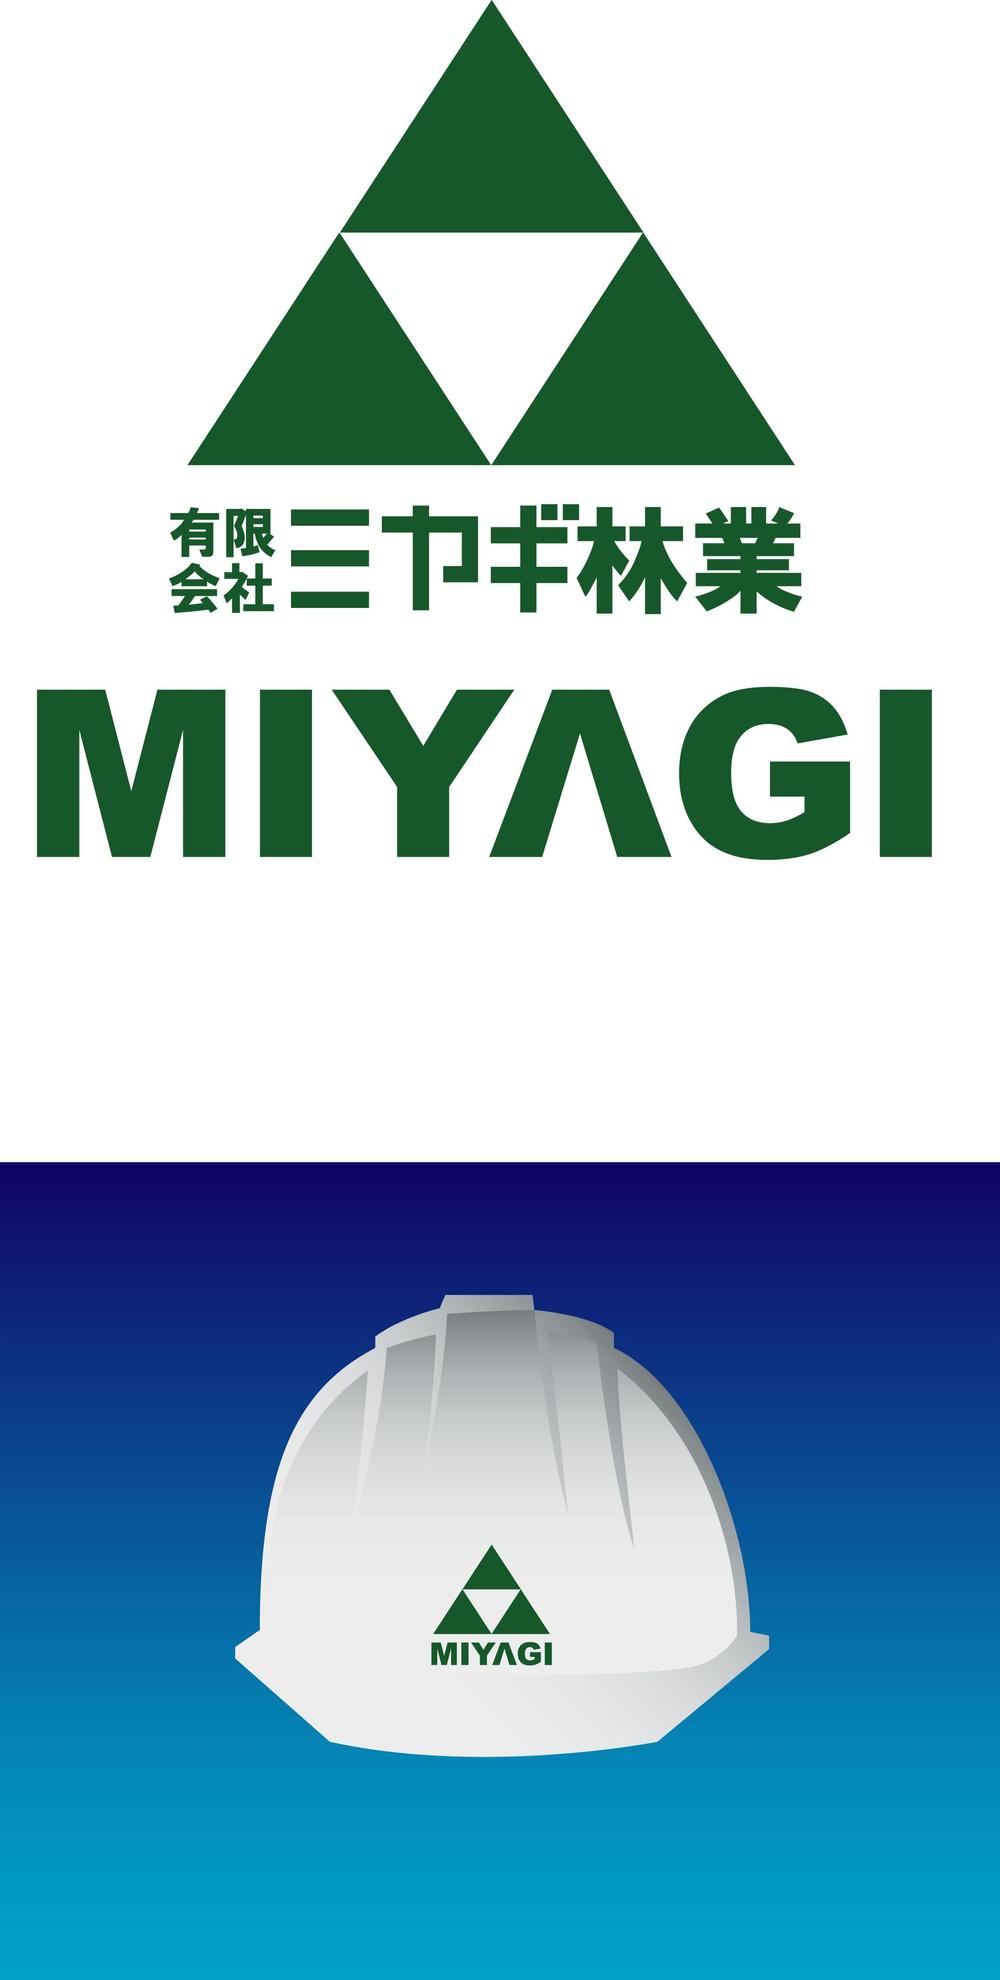 MIYAGI_RINGYO_B_VER.jpg